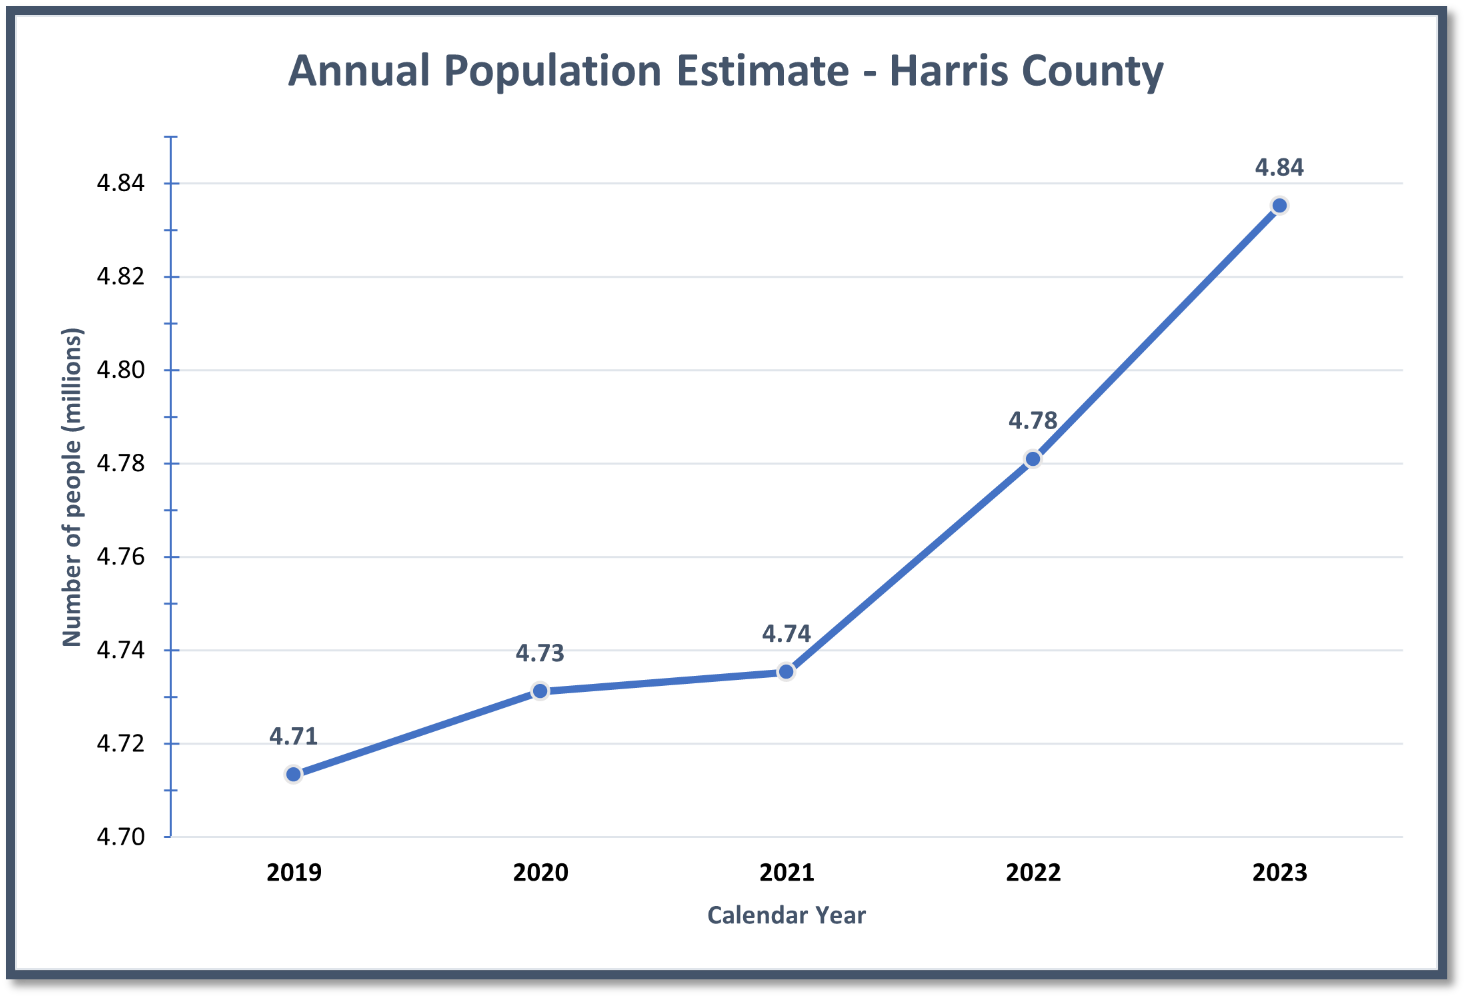 Annual Population Estimates